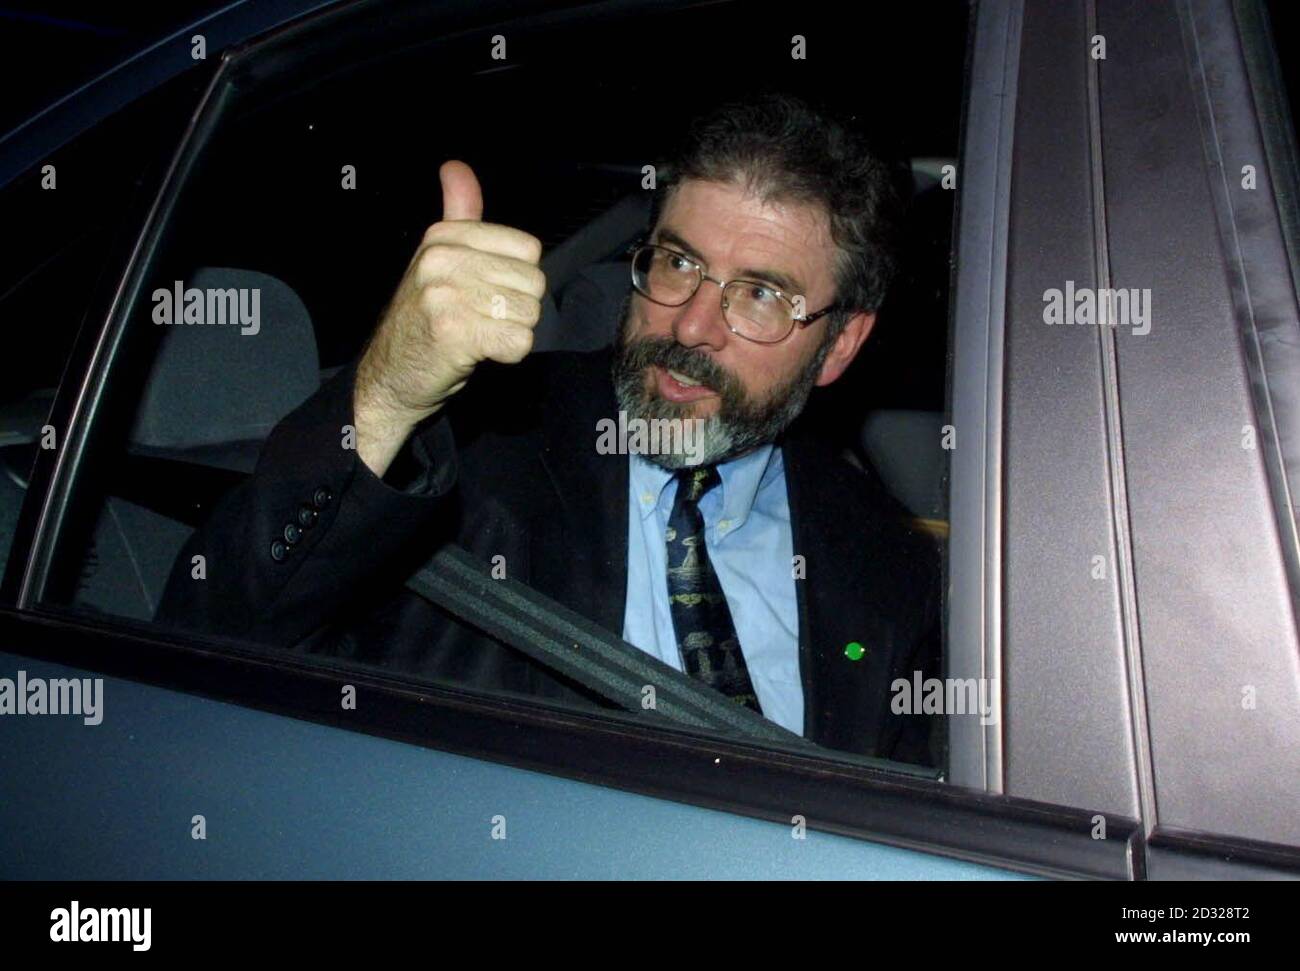 Sinn Fein-Anführer Gerry Adams verlässt Westminster Hall in London. Adams nannte die Ankündigung der IRA zur Waffenstilllegung einen "riesigen, befreienden Sprung nach vorn. Adams sagte, der Umzug sei "beispiellos und bahnbrechend". * und sollte den gesamten Friedensprozess entfesseln". Stockfoto